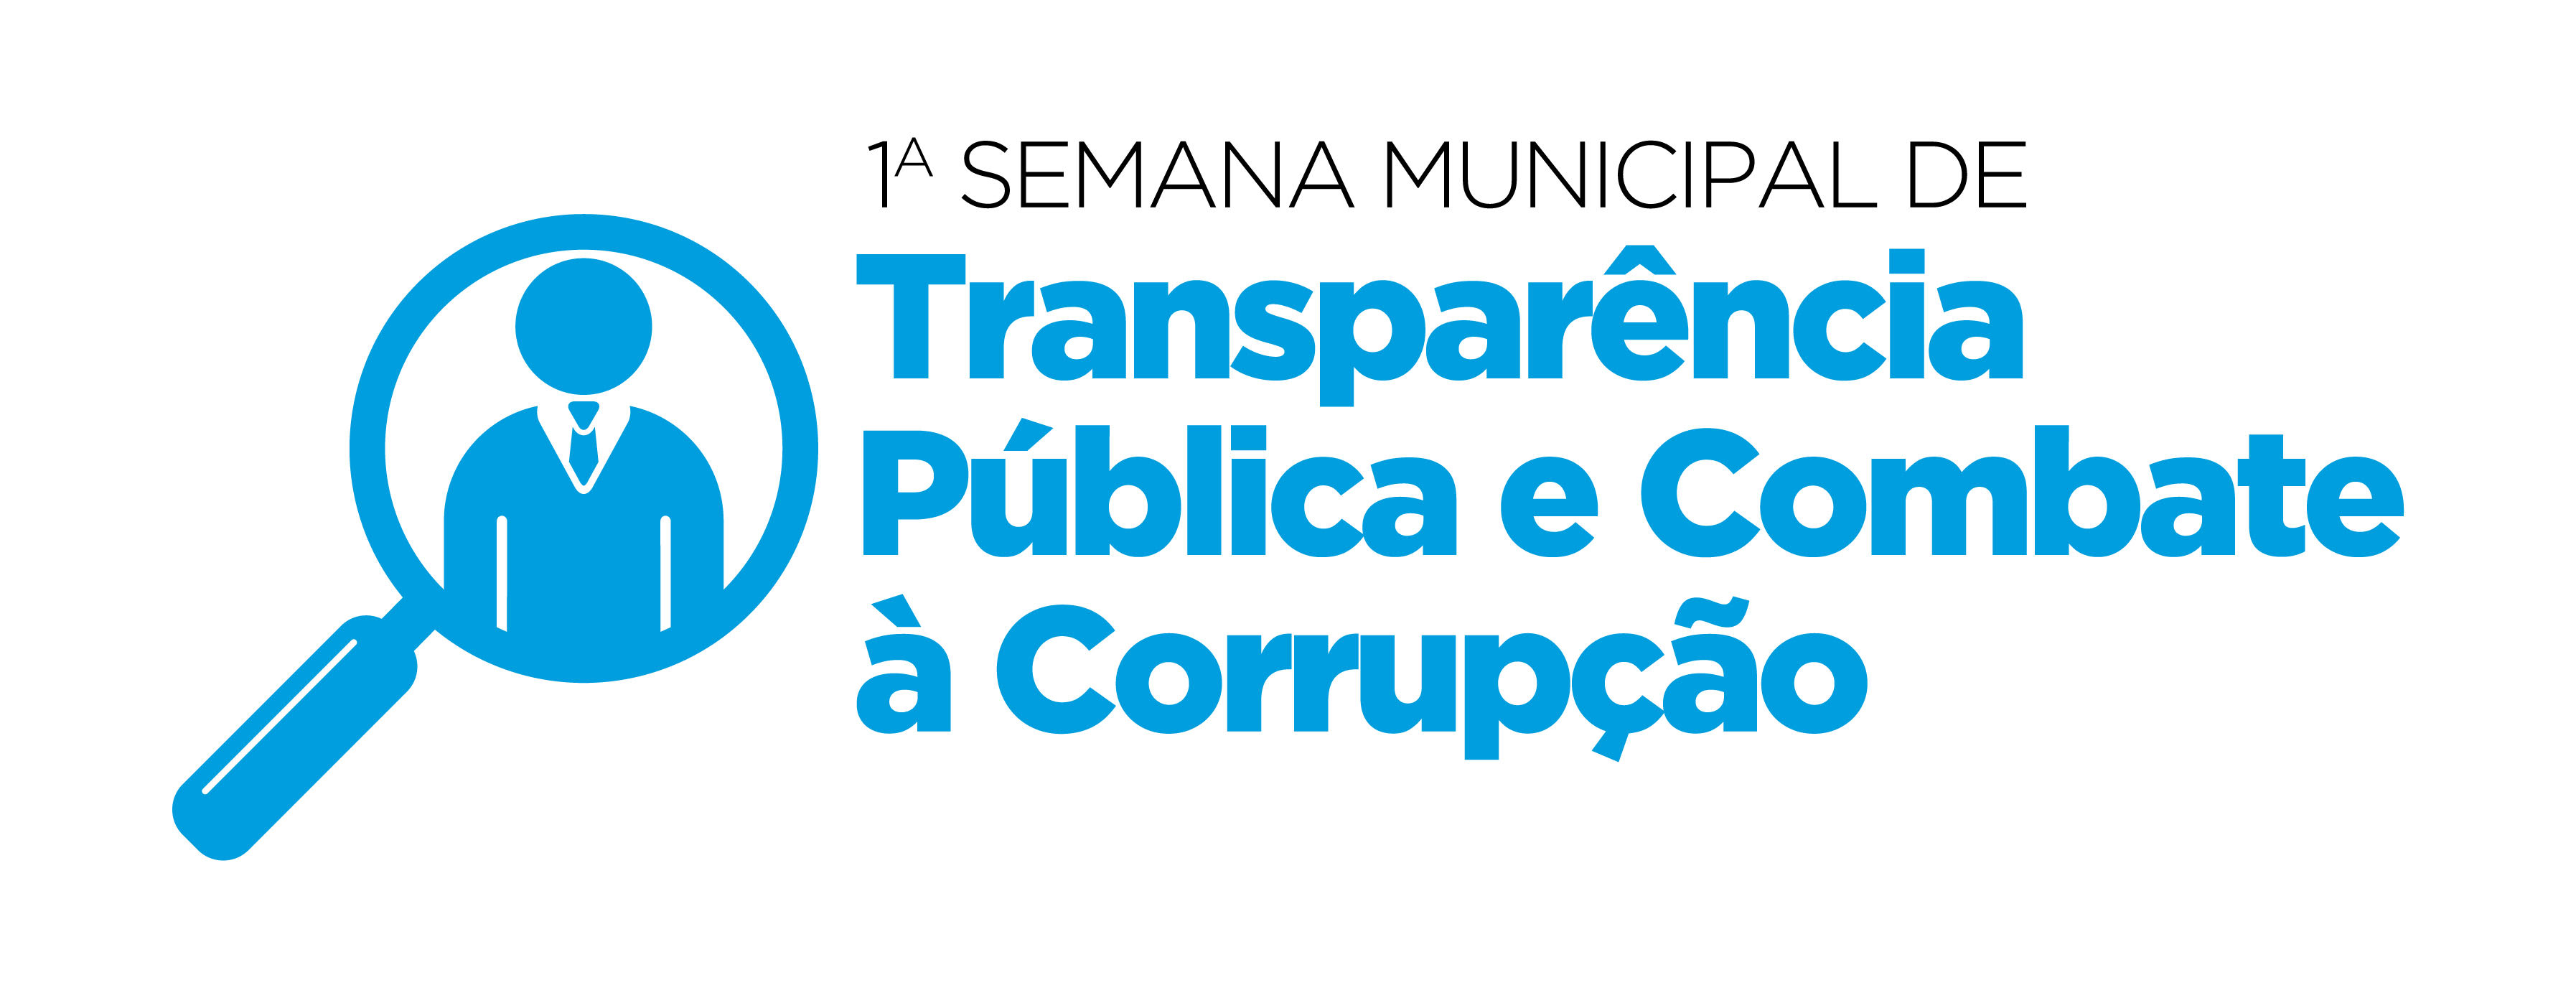 Semana Municipal de Transparência Pública e Combate à Corrupção